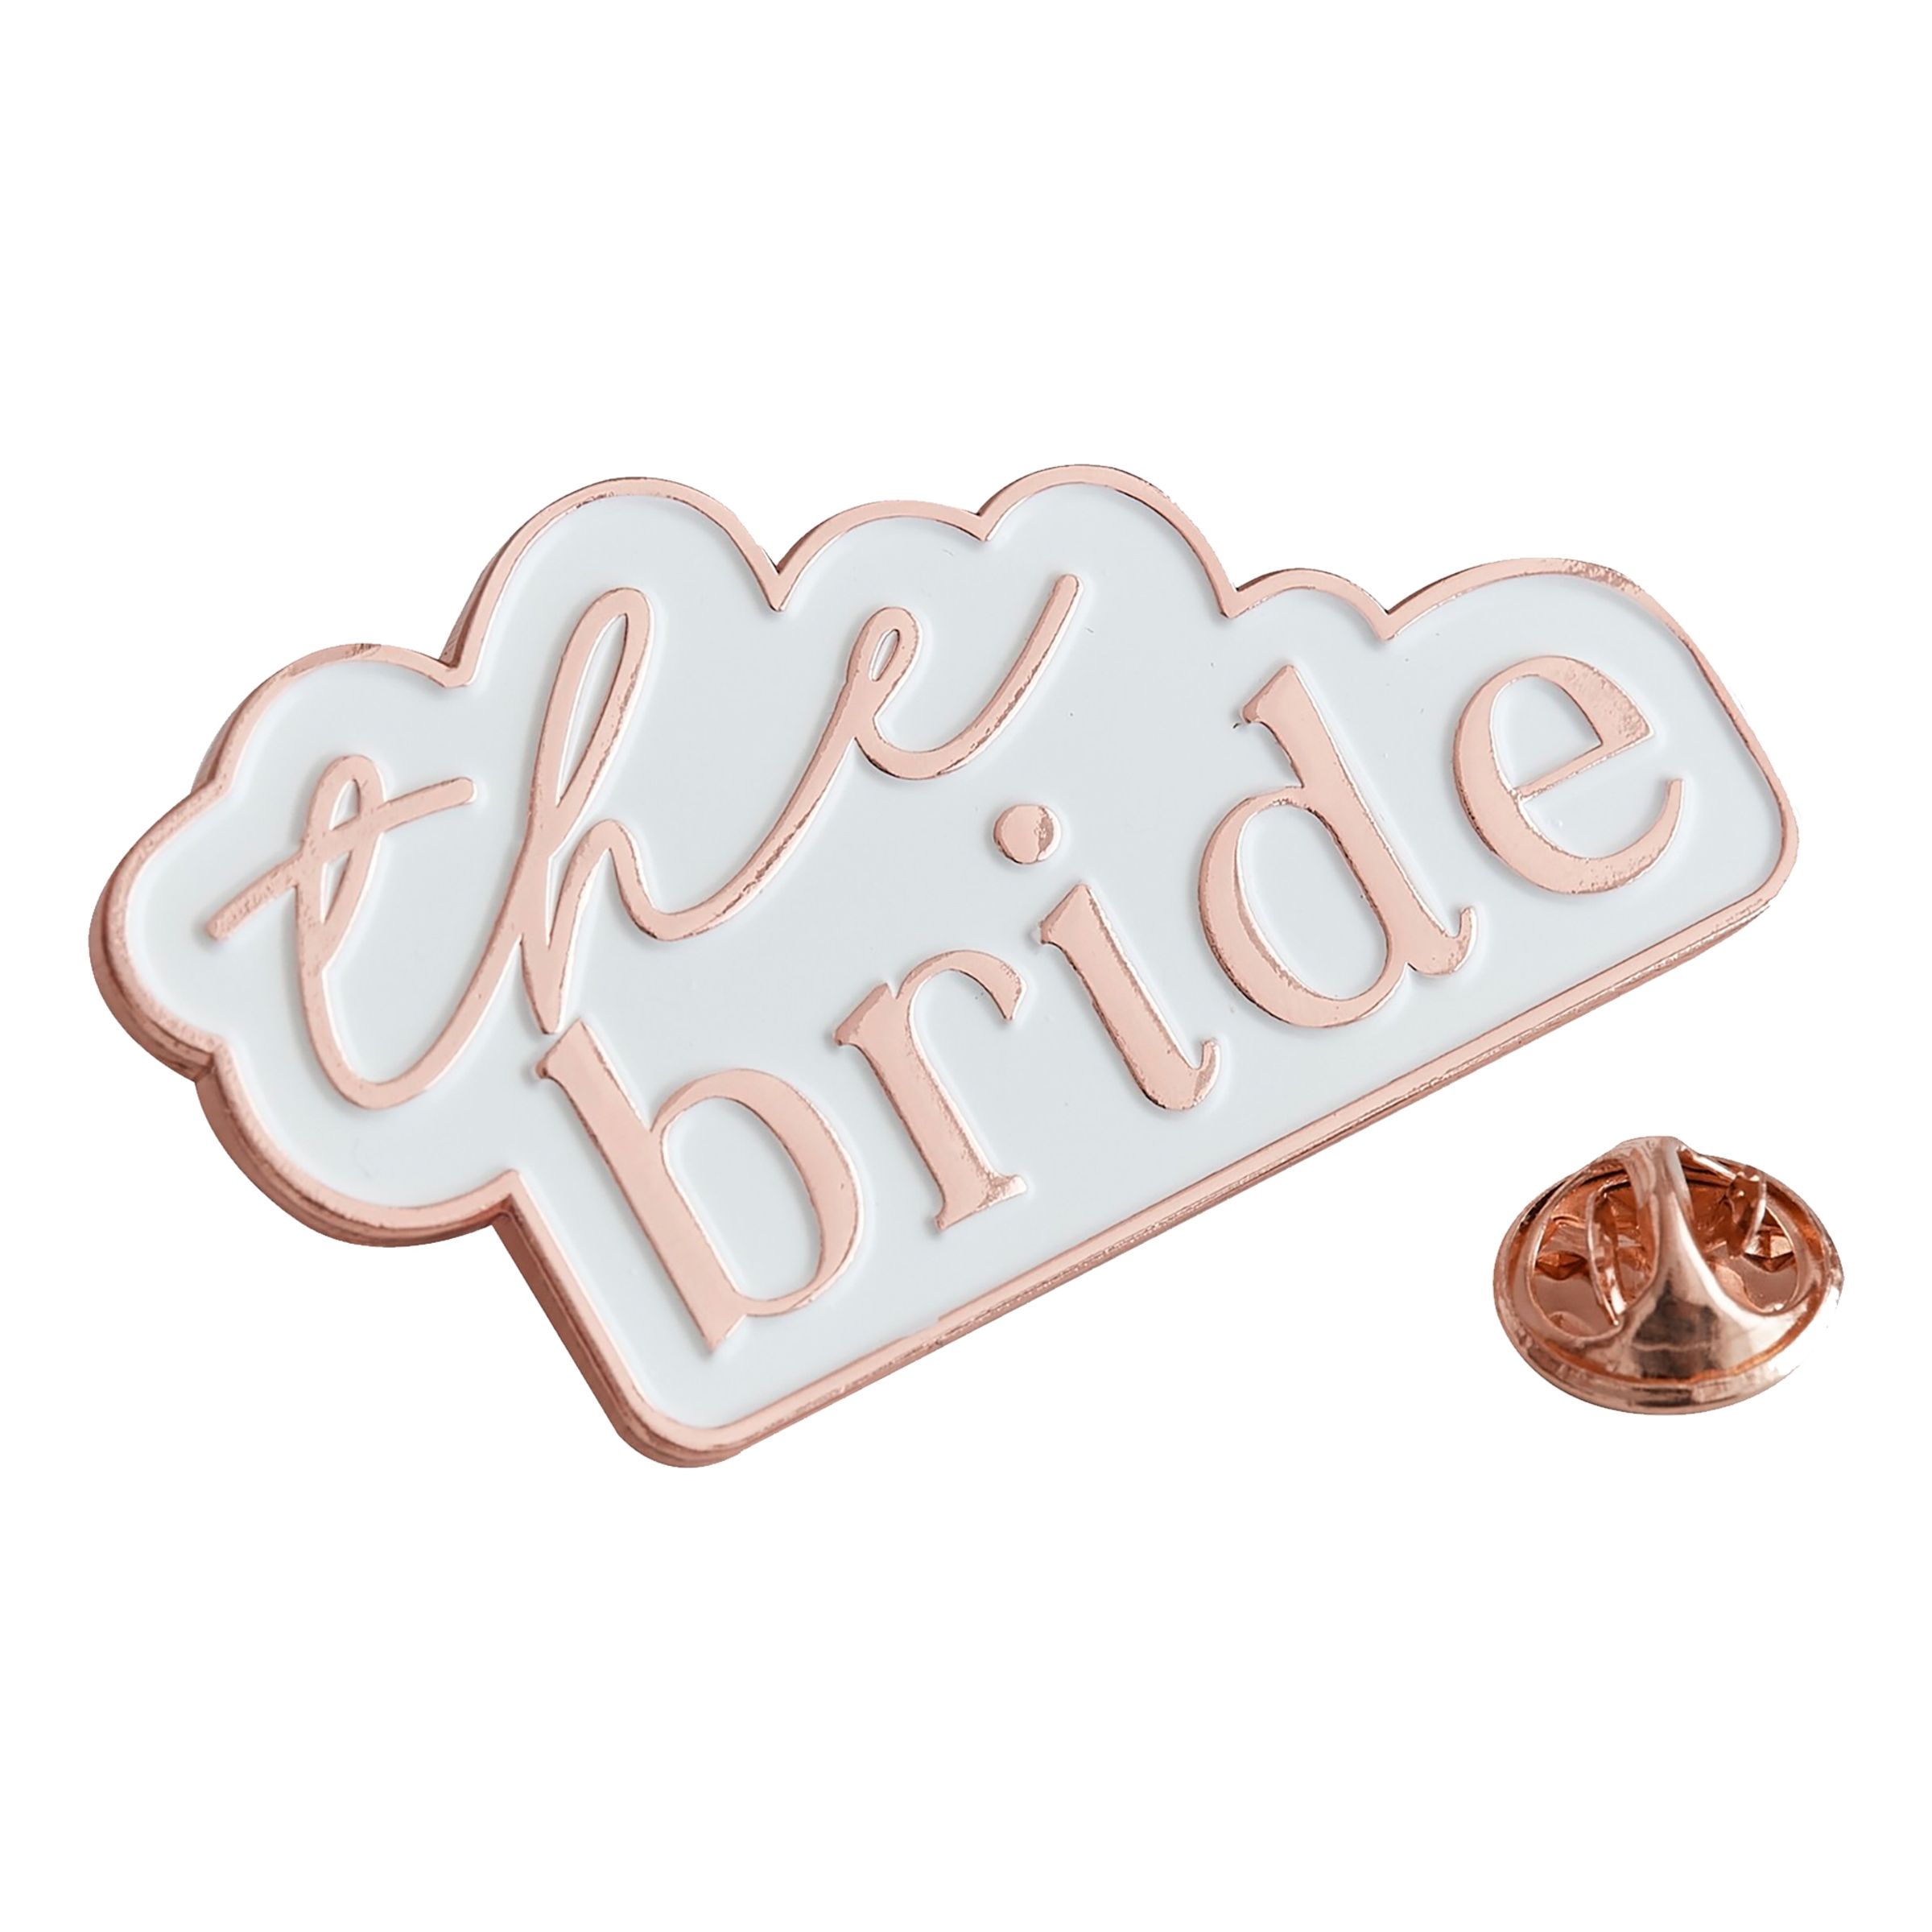 Pin The Bride